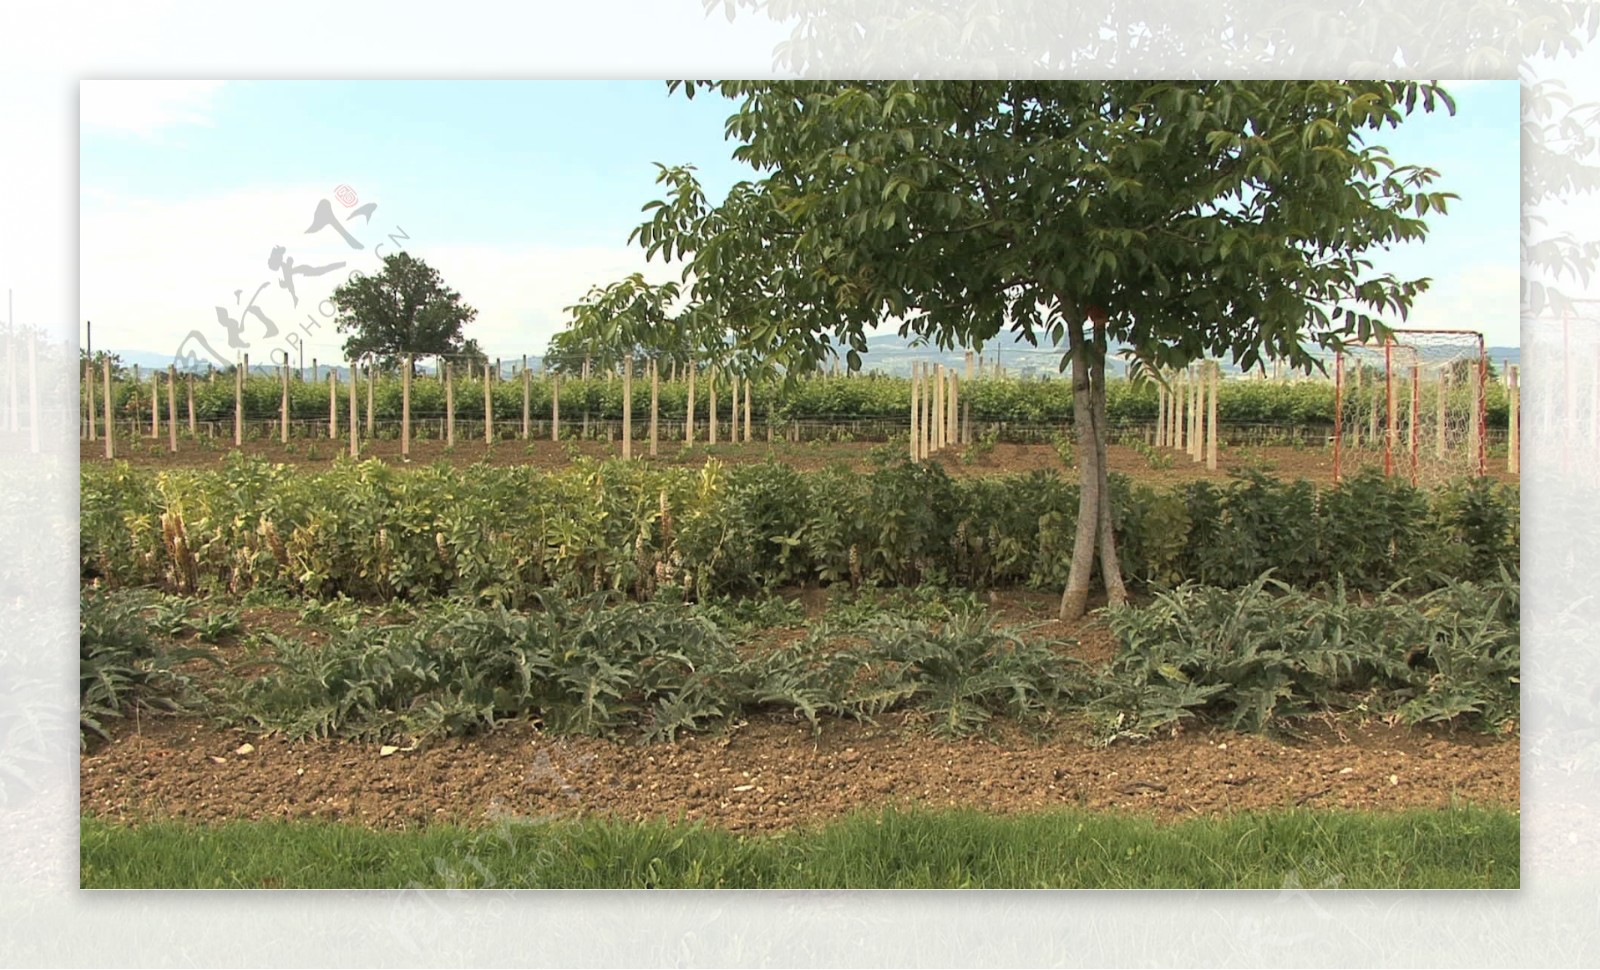 意大利翁布里亚整洁的花园和葡萄股票视频